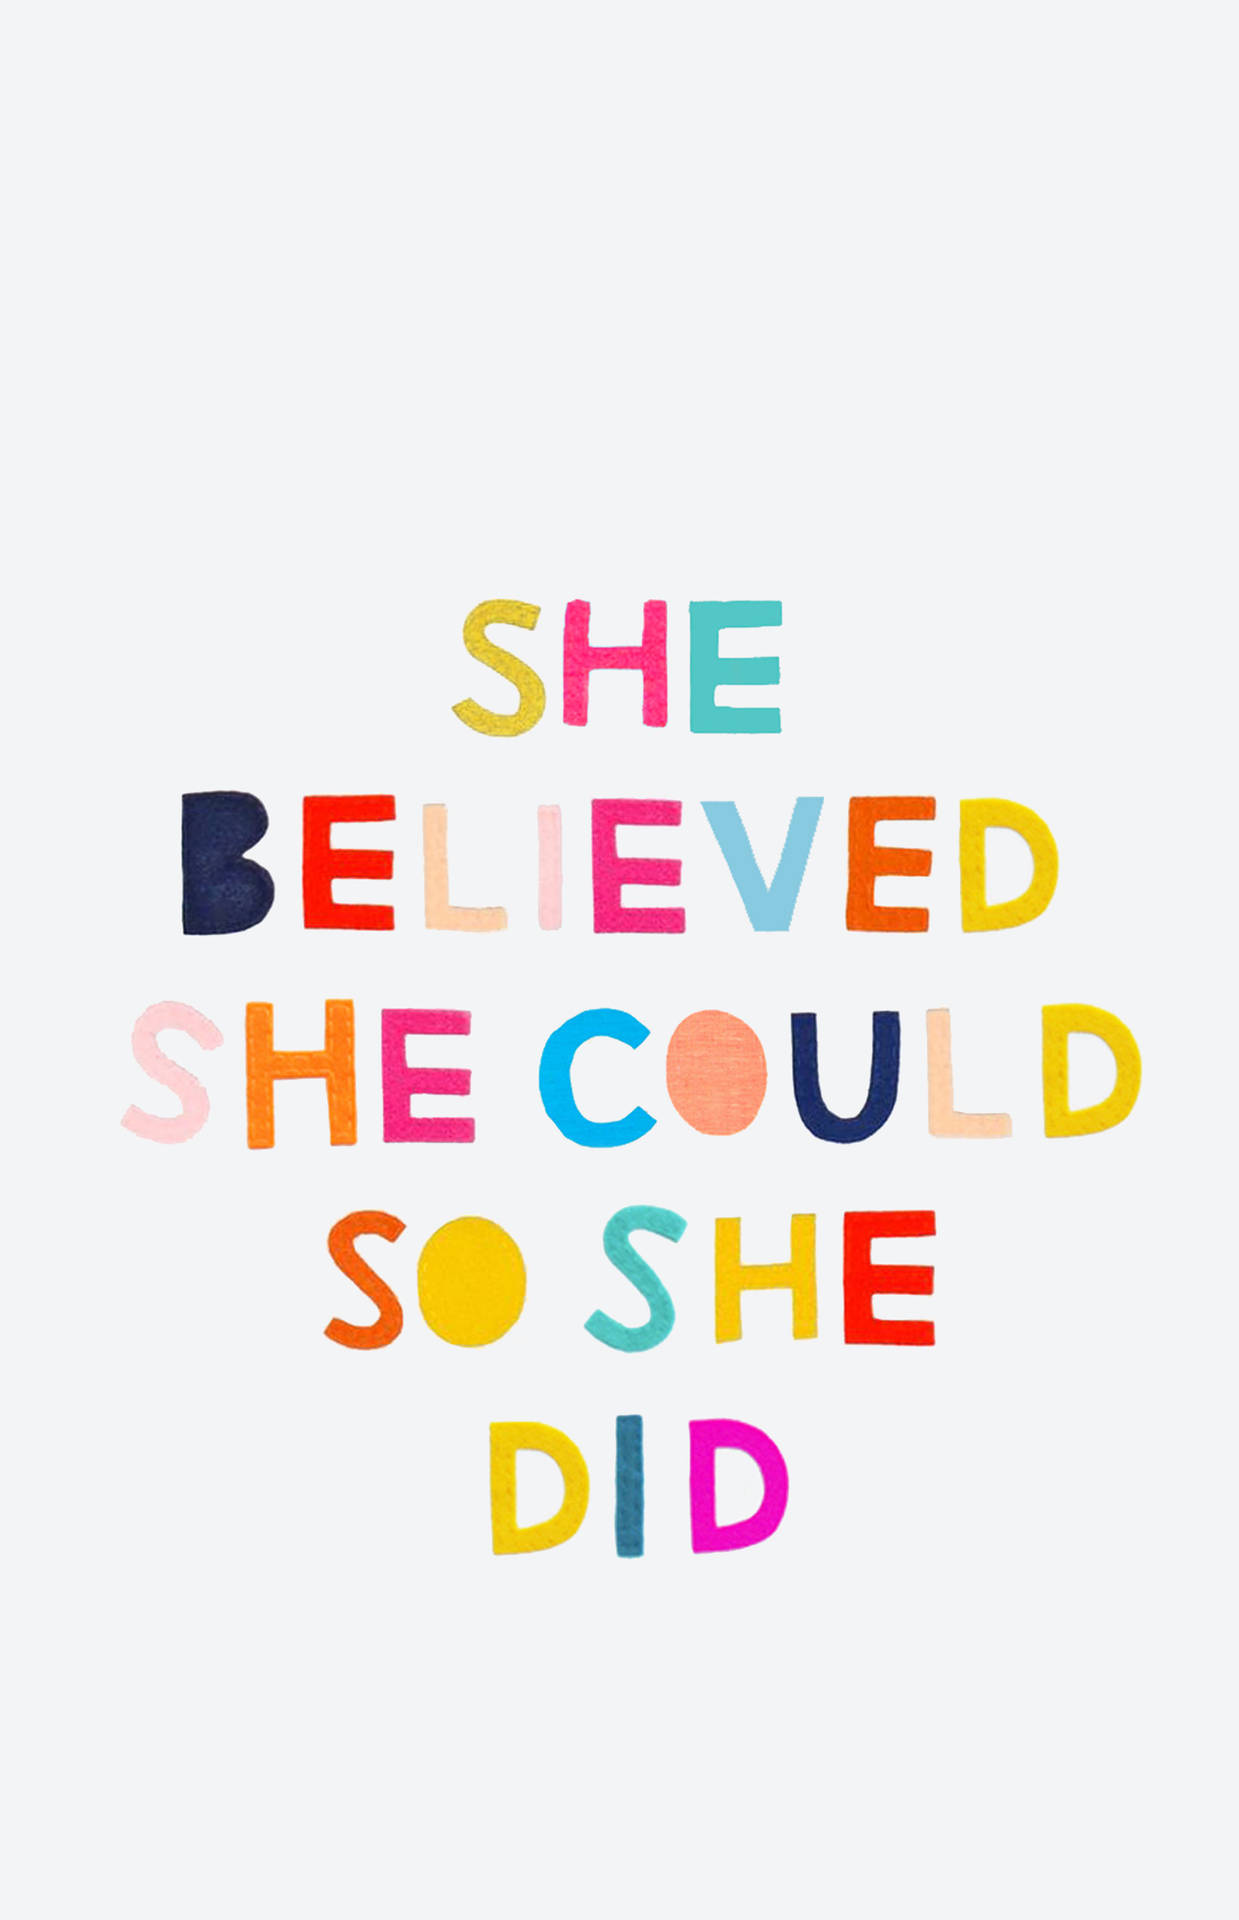 Women Empowerment Motivational Quotes Wallpaper